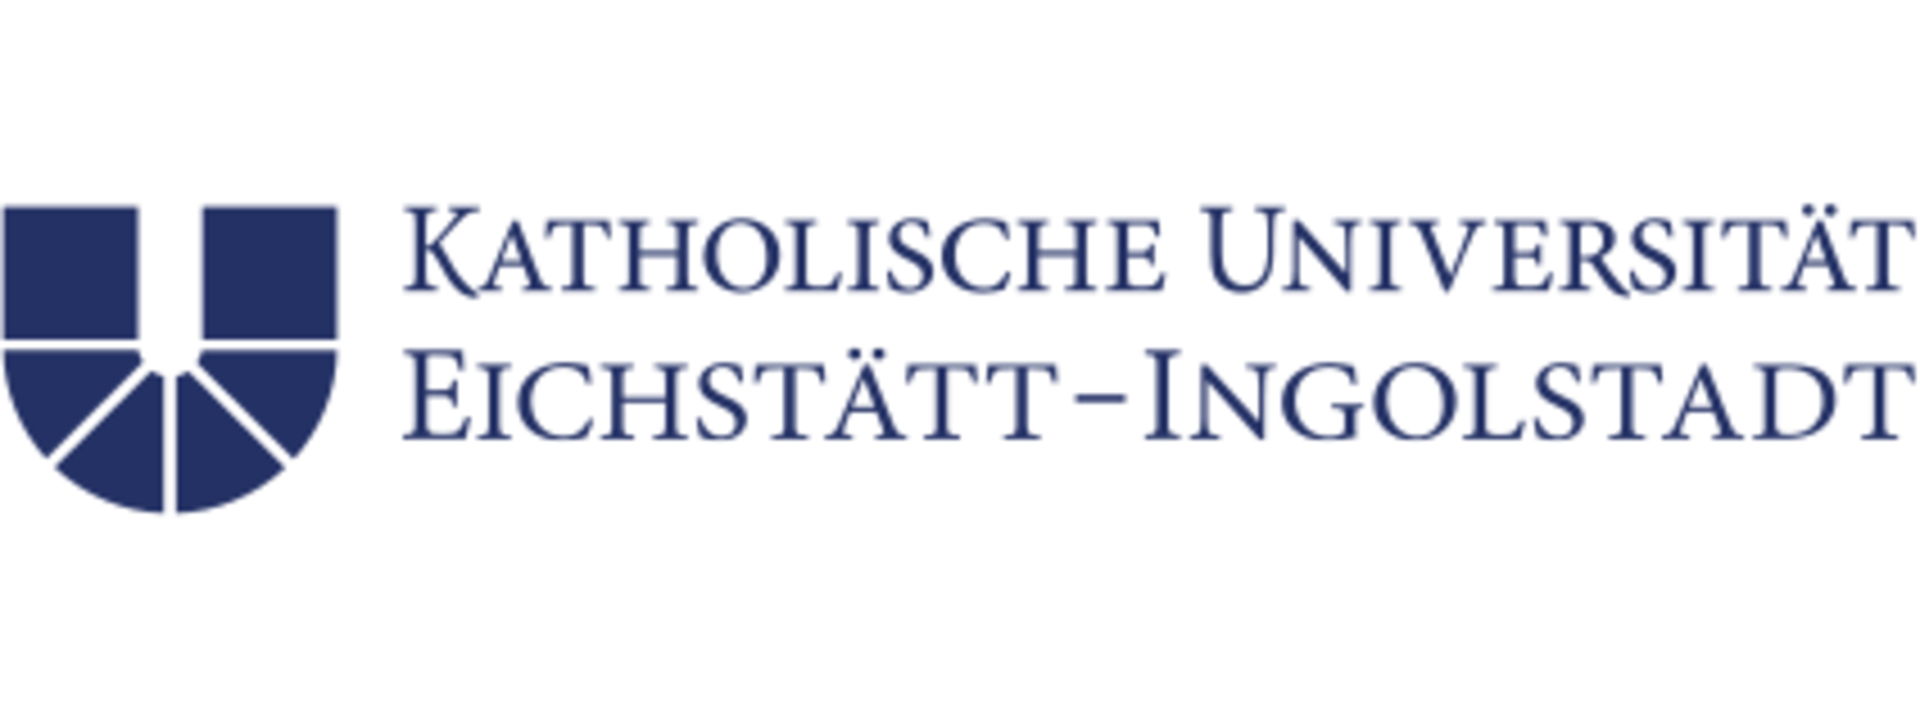 Hochschulberatung - Katholische Universität Eichstätt-Ingolstadt